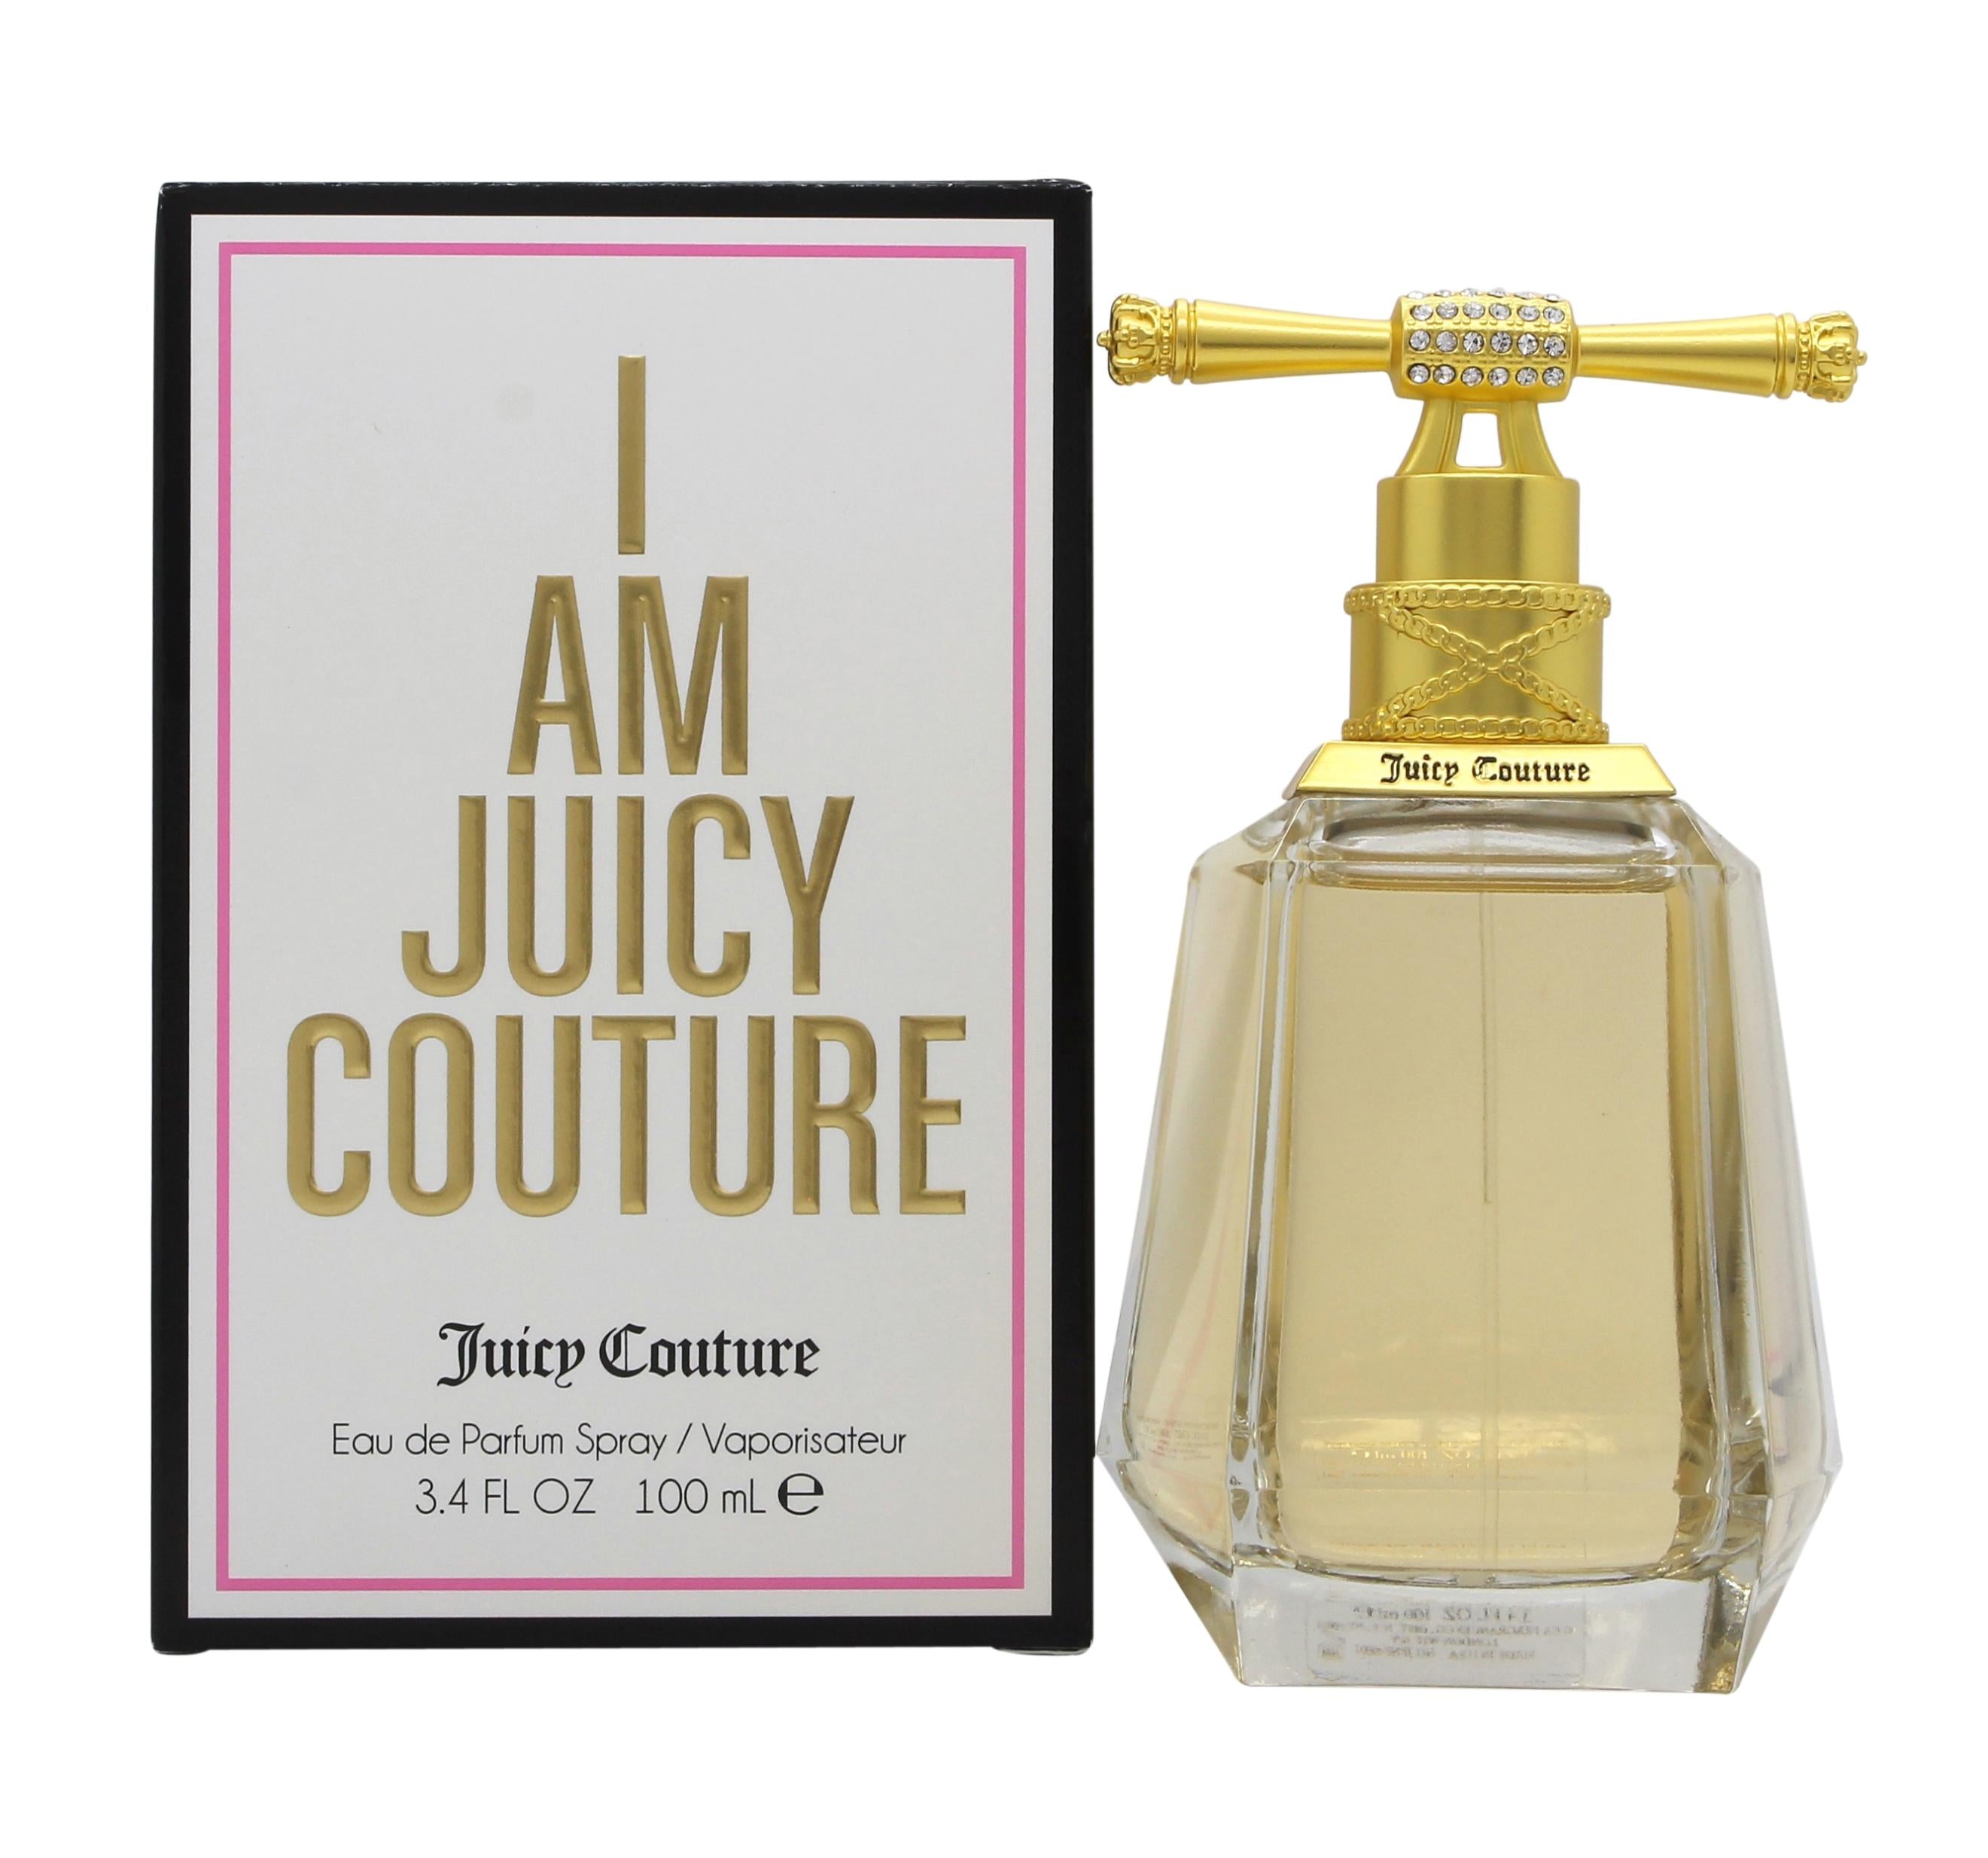 View Juicy Couture I Am Juicy Couture Eau de Parfum 100ml Spray information